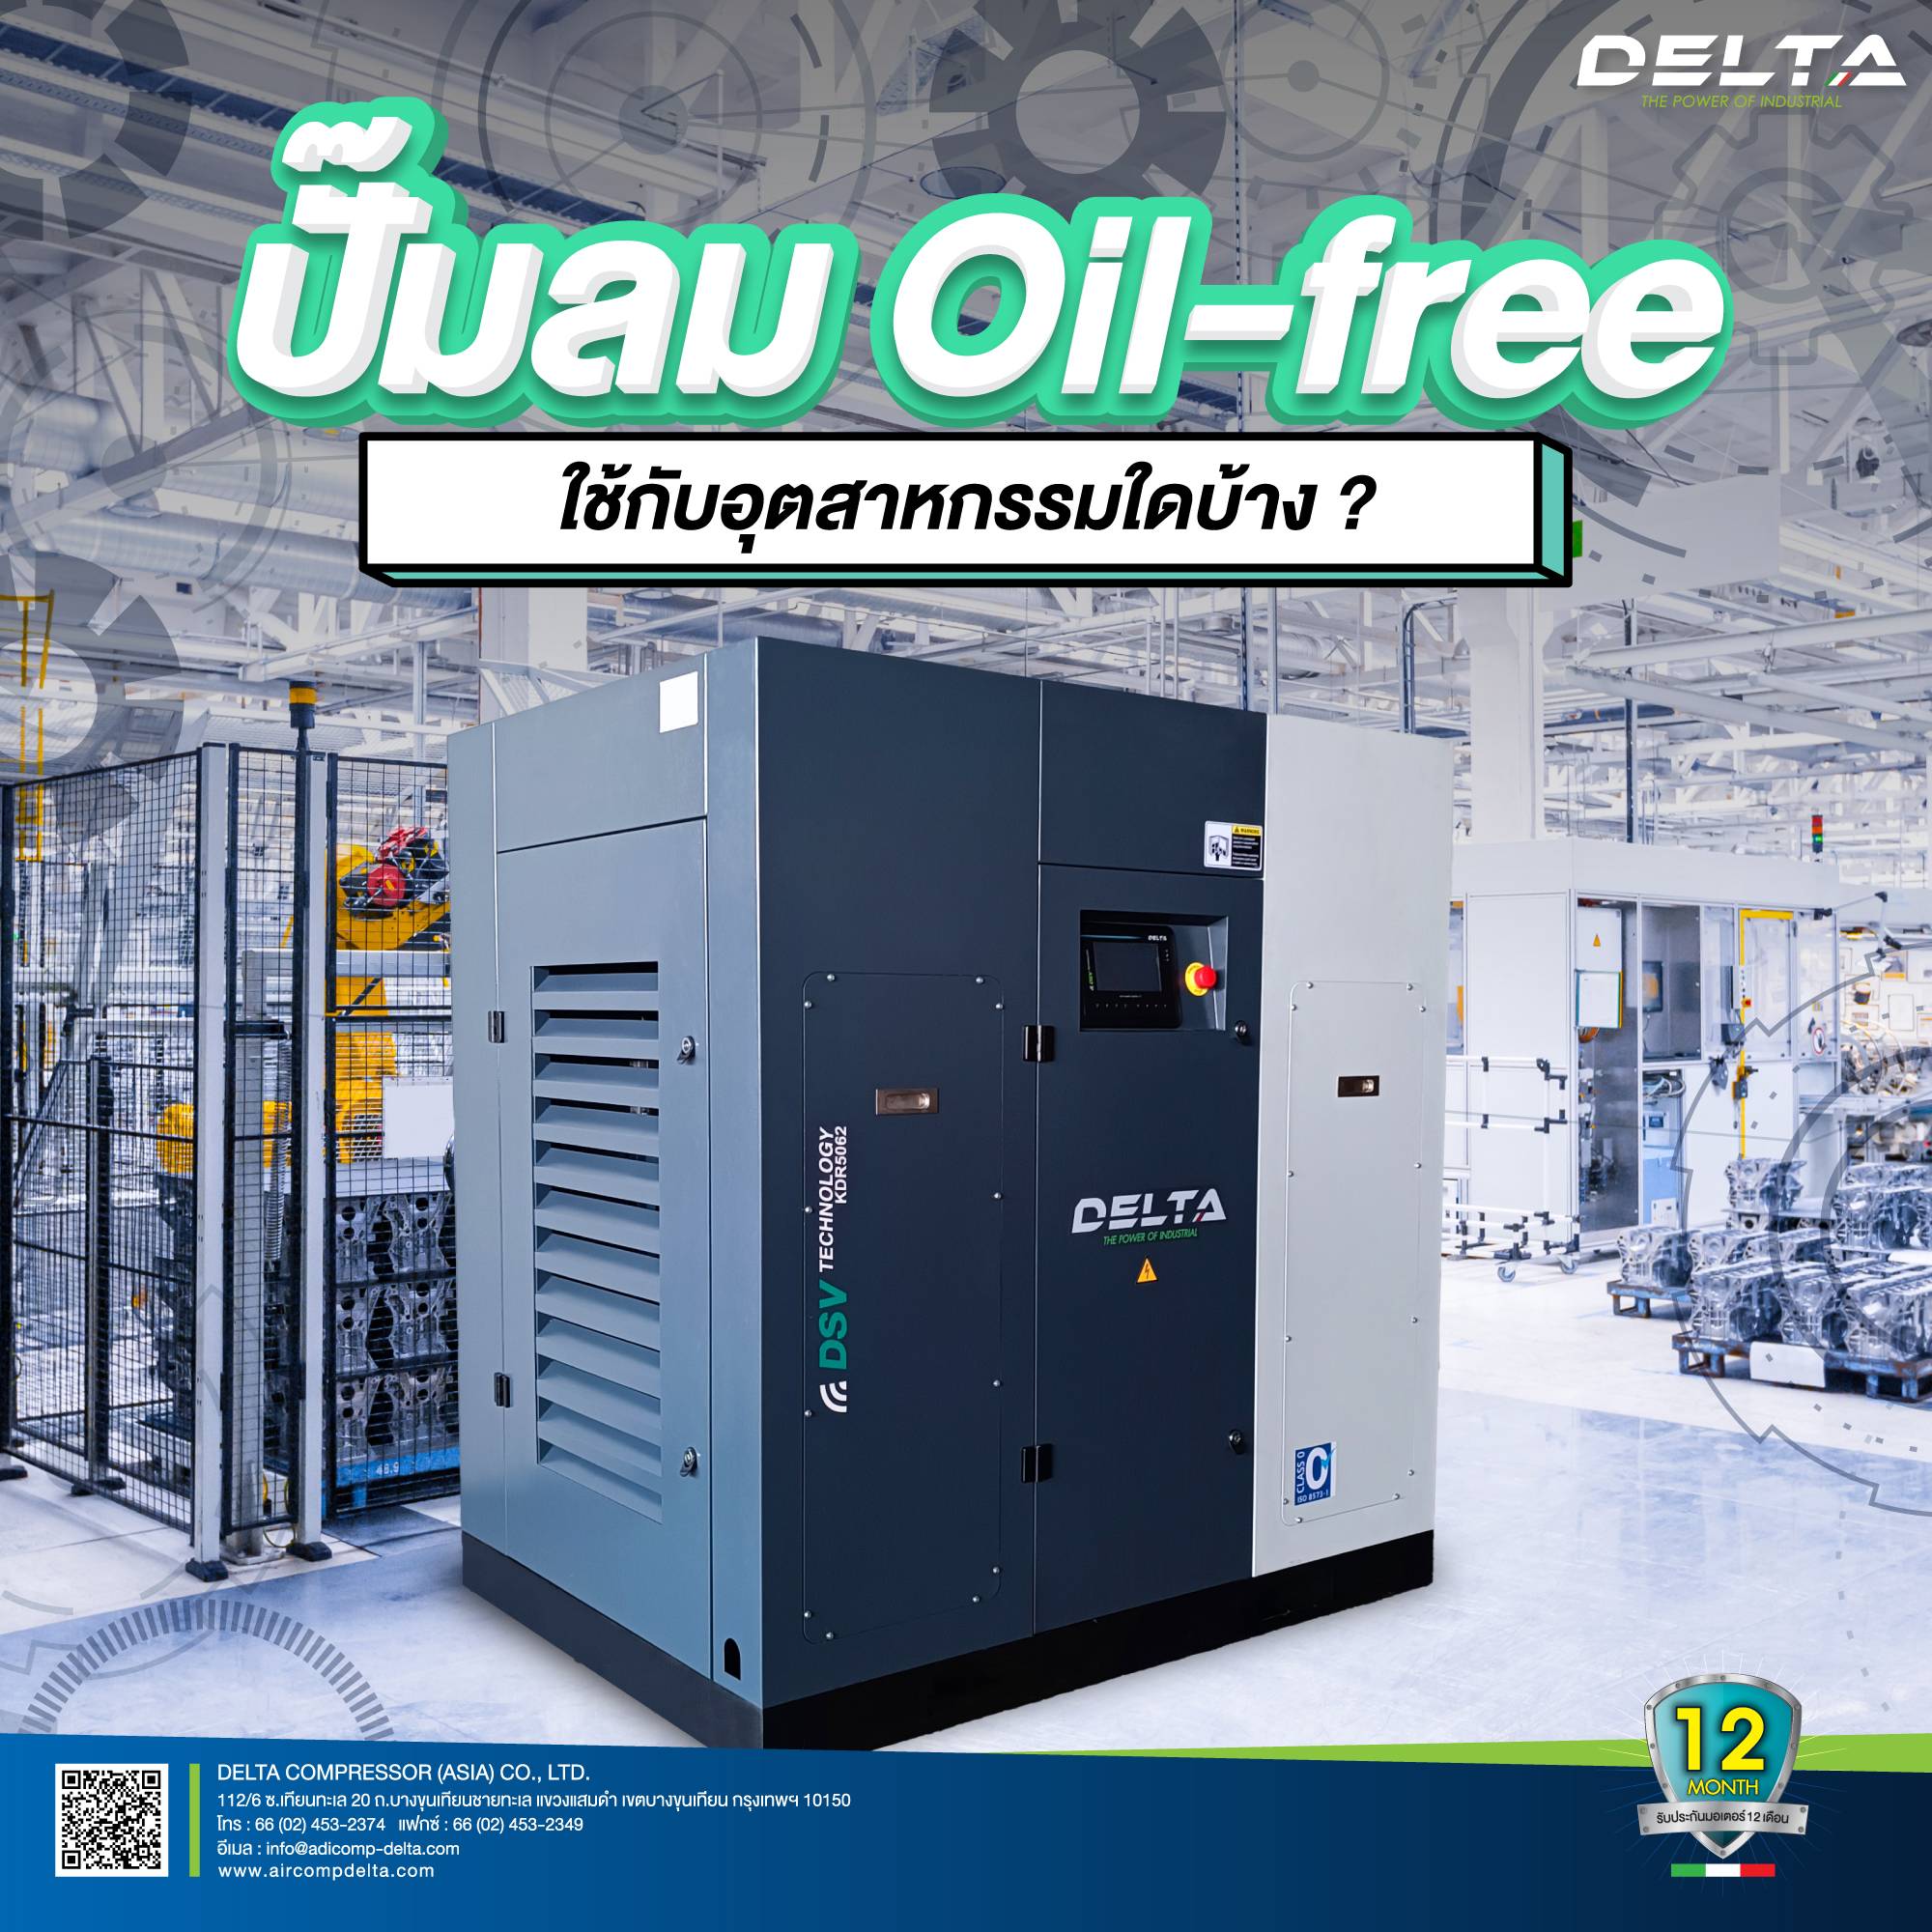 oil-free compressor อากาศปลอดภัยไร้น้ำมัน